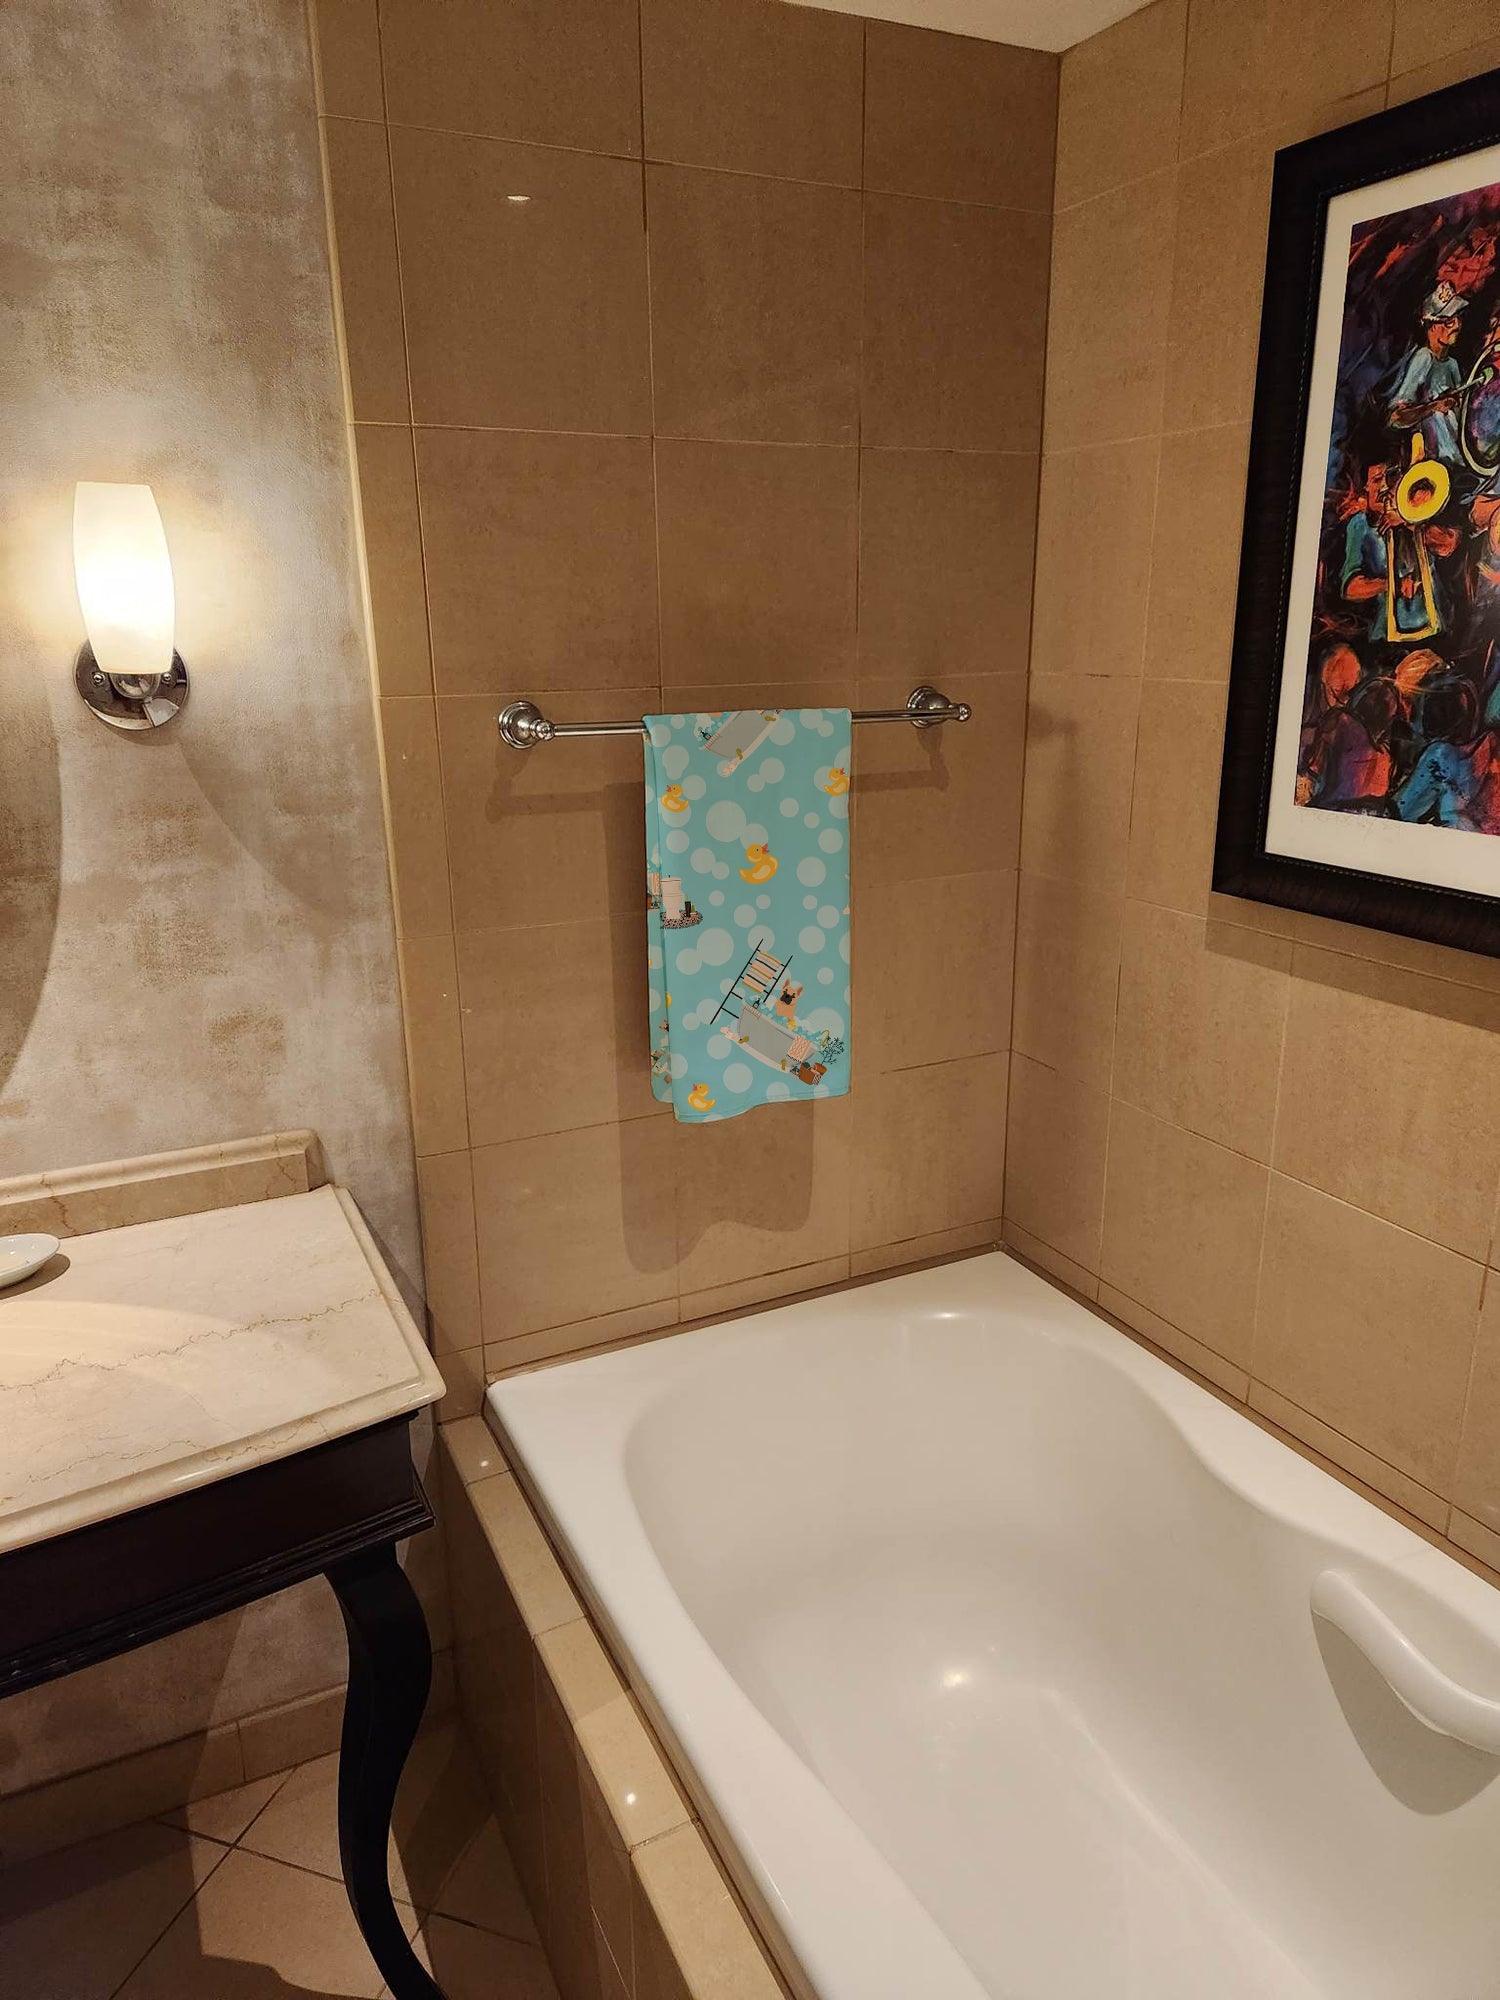 Fawn French Bulldog Bath Towel Large